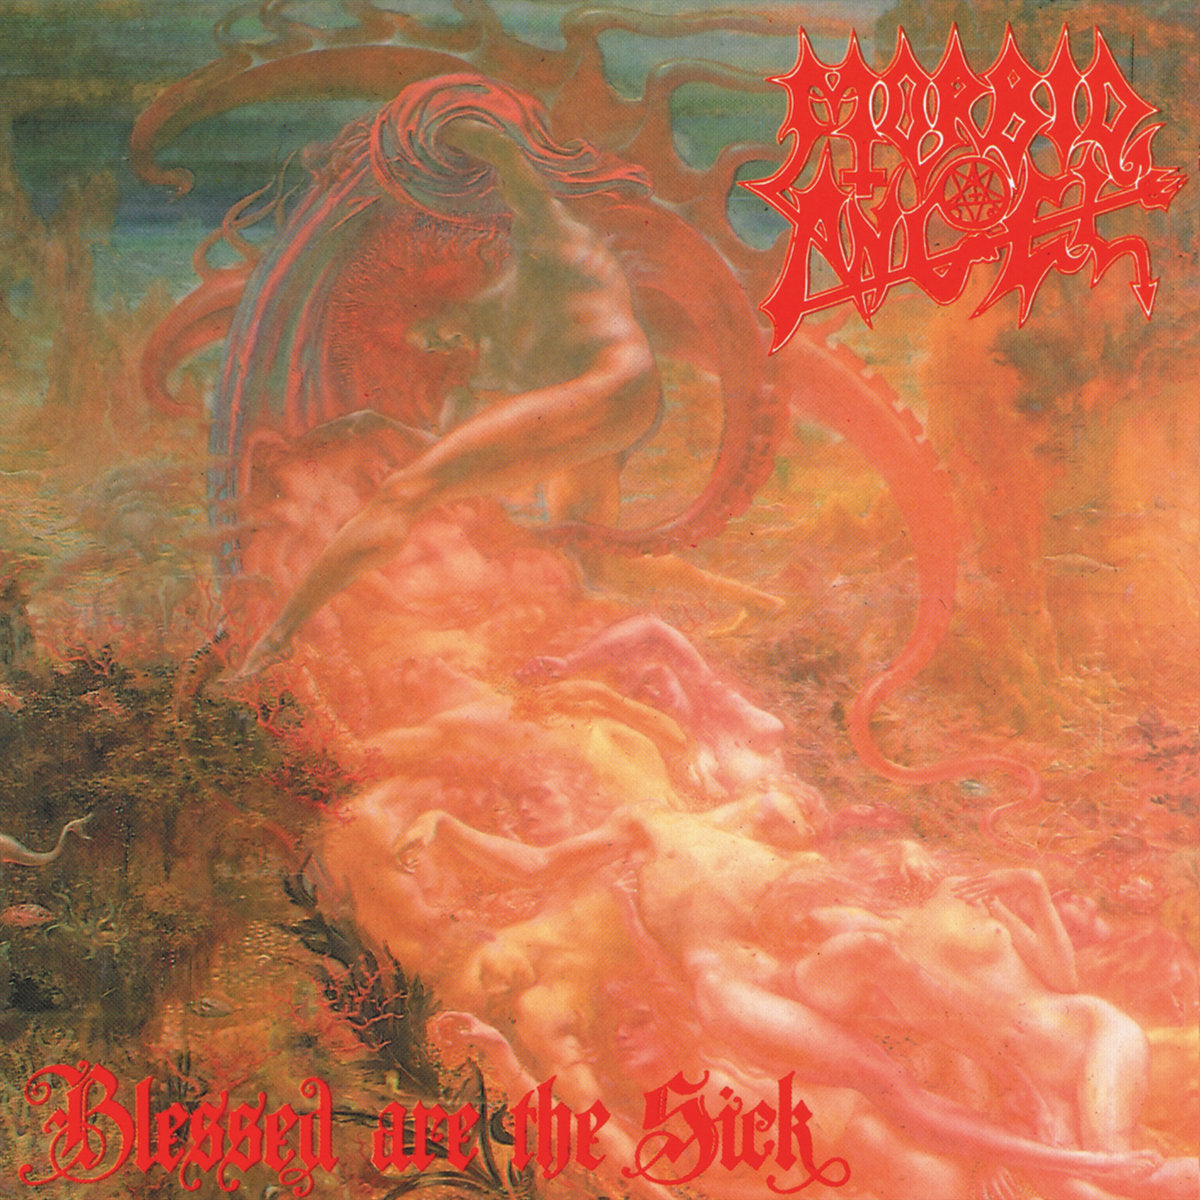 Morbid Angel "Blessed Are The Sick" Full Dynamic Range Digipak CD